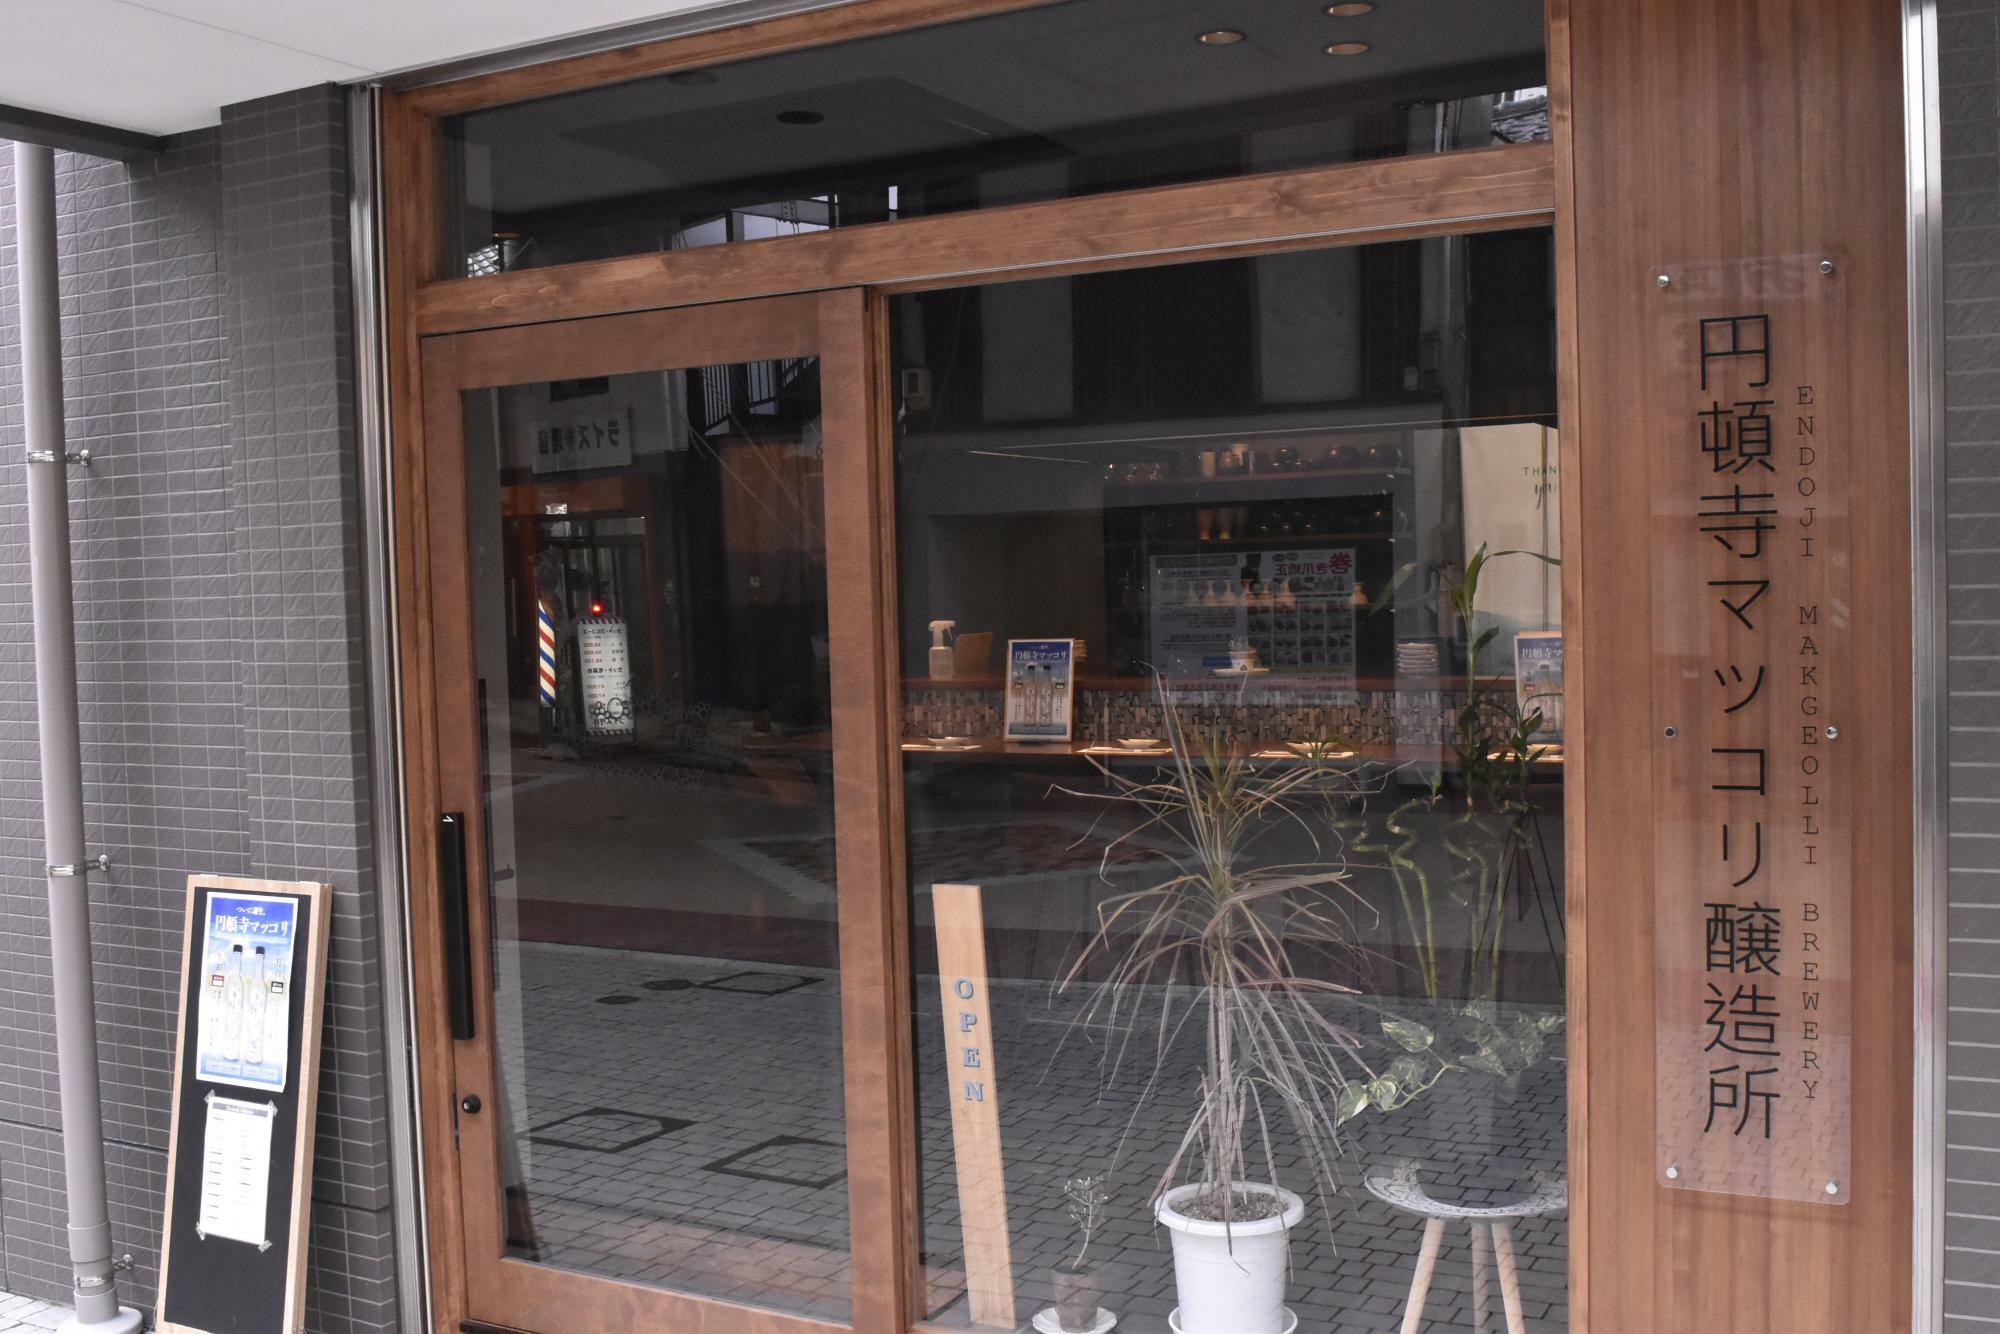 場所は円頓寺本町商店街の一角。魅力的な飲食店が続々オープンしている人気のエリアだ。名古屋駅からも徒歩10分ほど